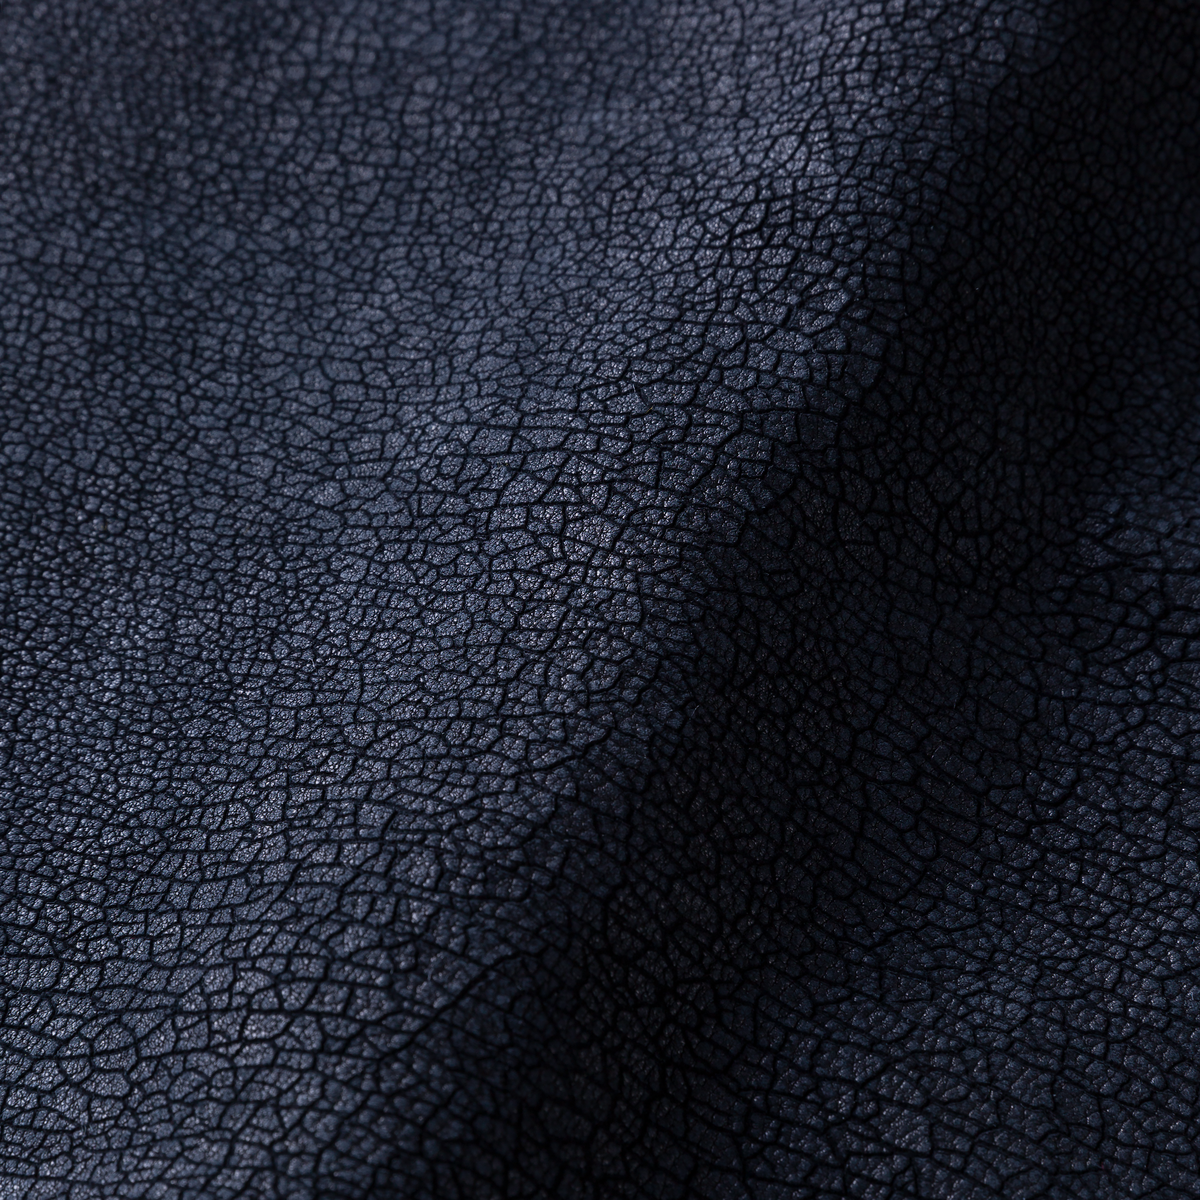 Fabric sample Dwarf Rhino Crackle black